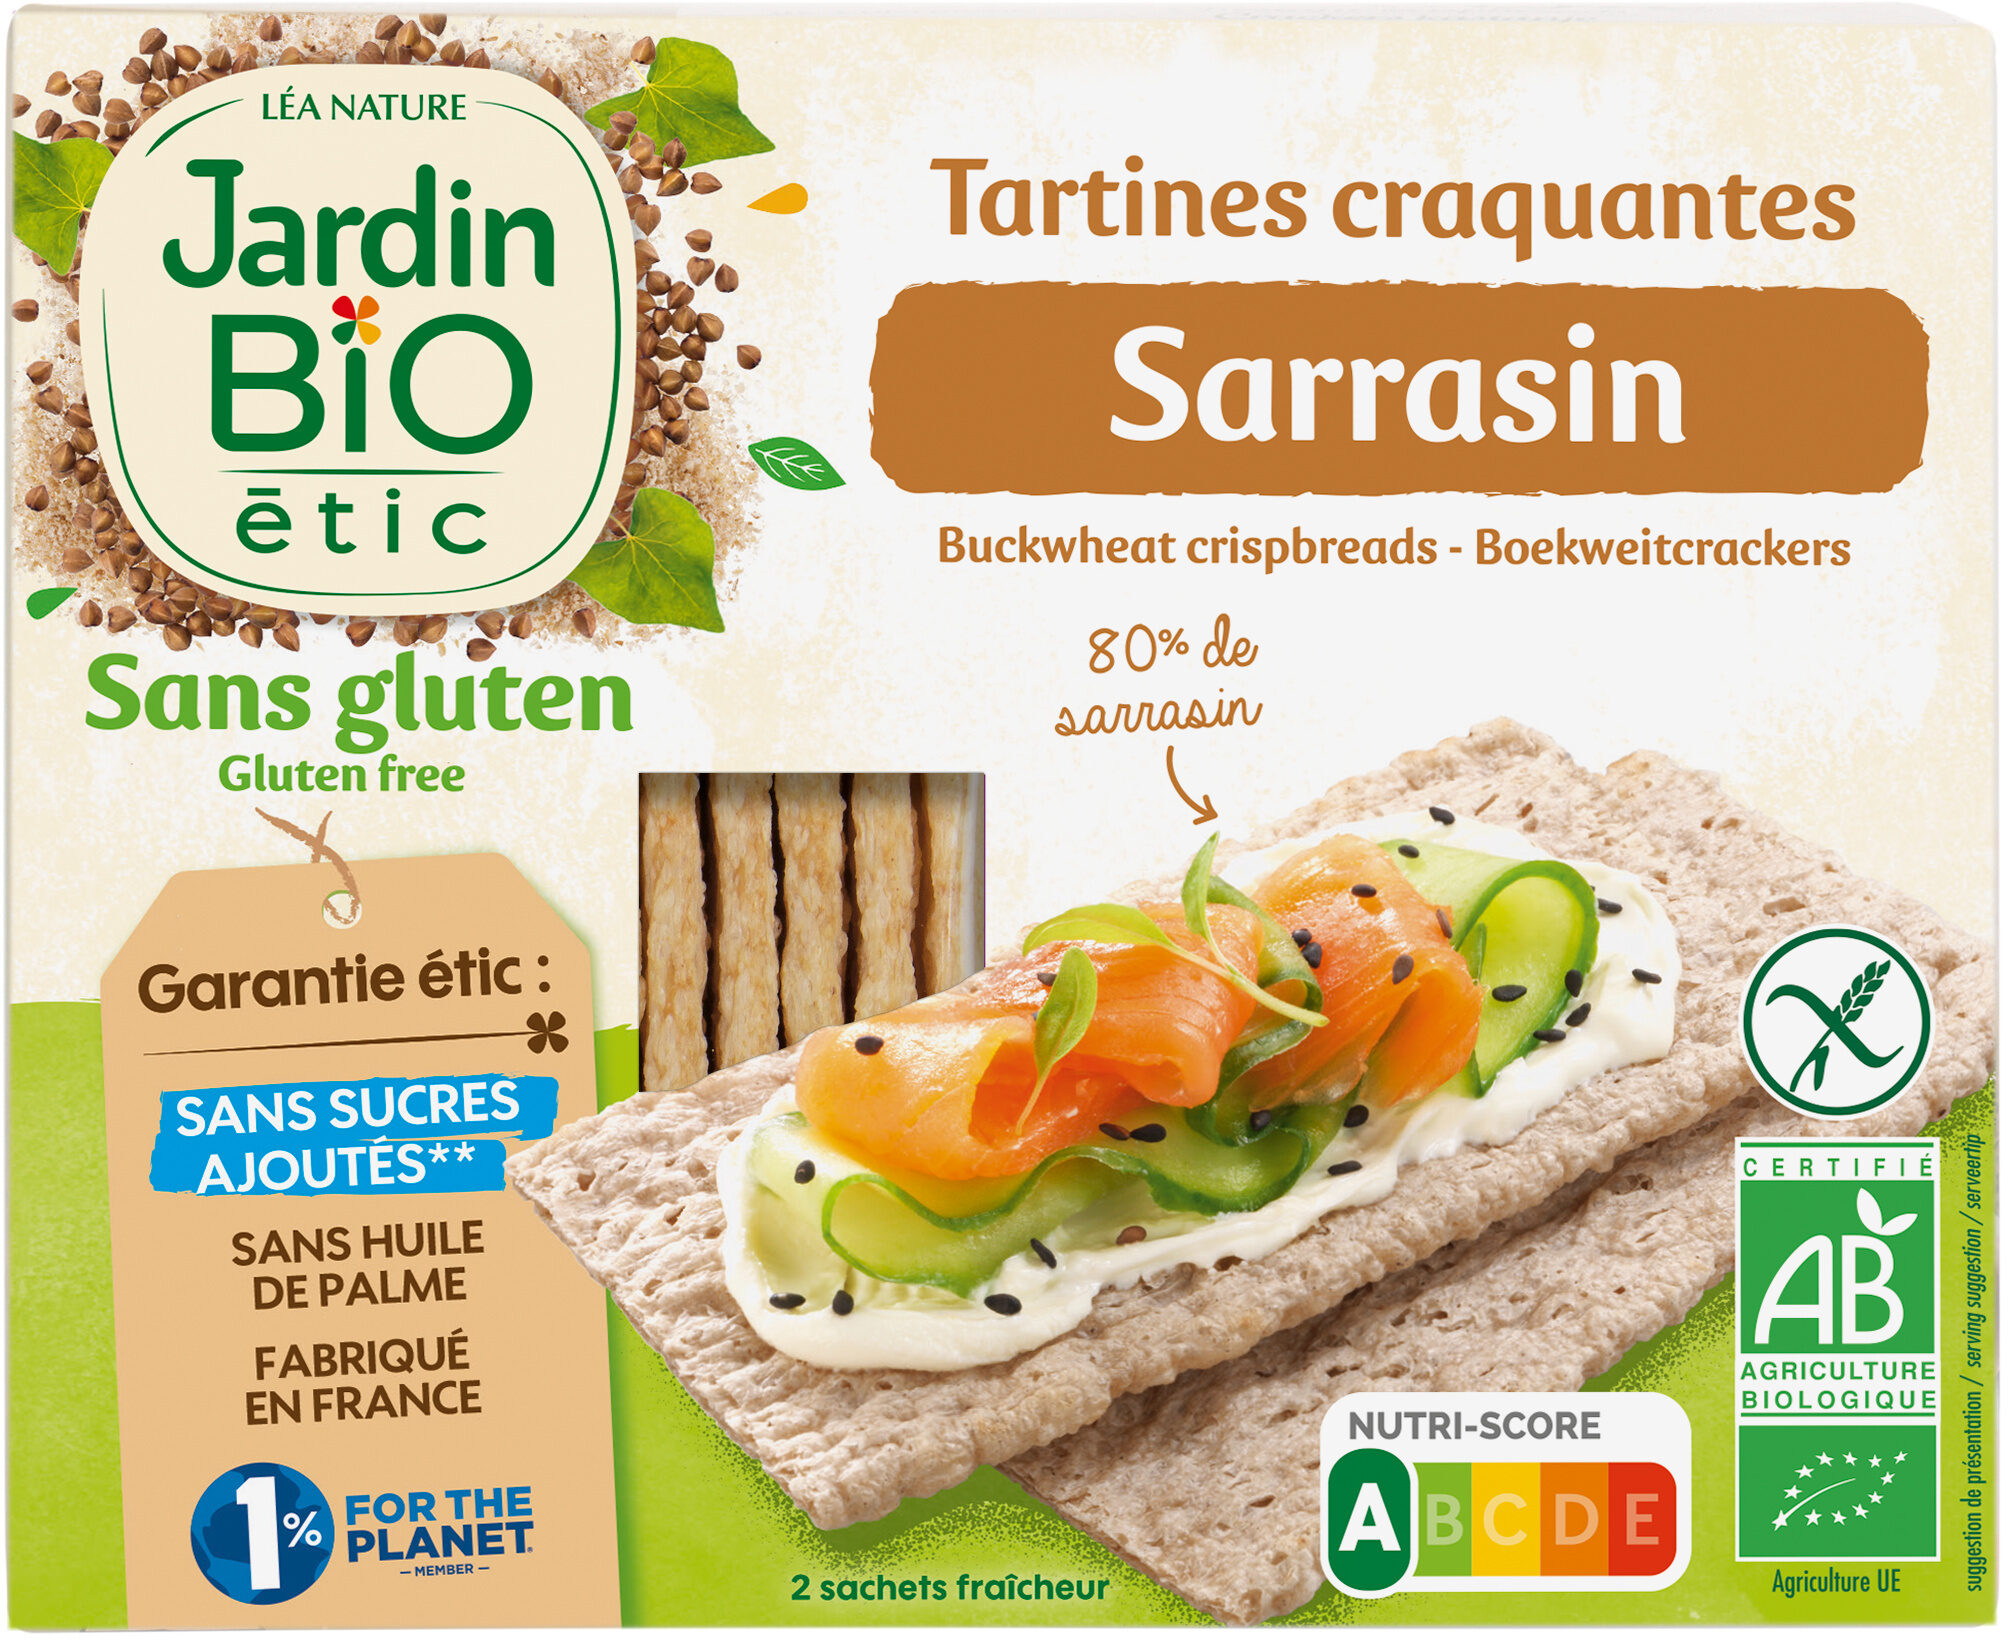 Tartines craquantes Sarrasin - Product - fr